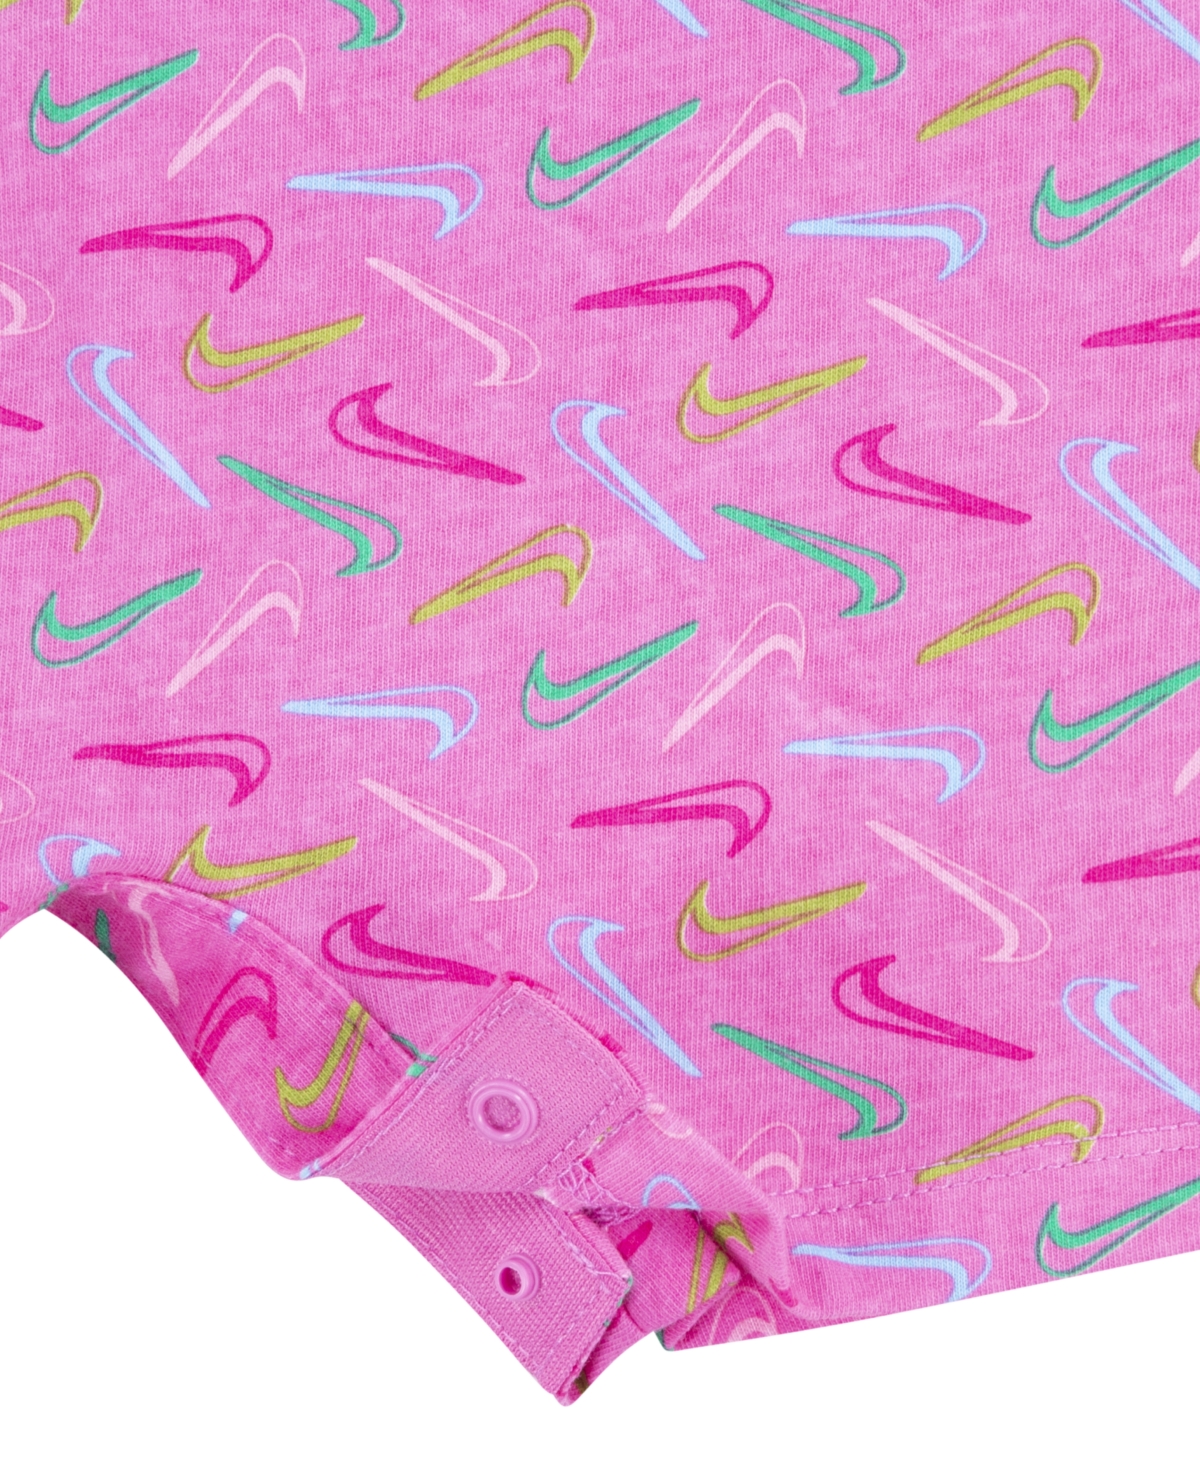 Shop Nike Infant Girls Swoosh Logo Romper In Playful Pink